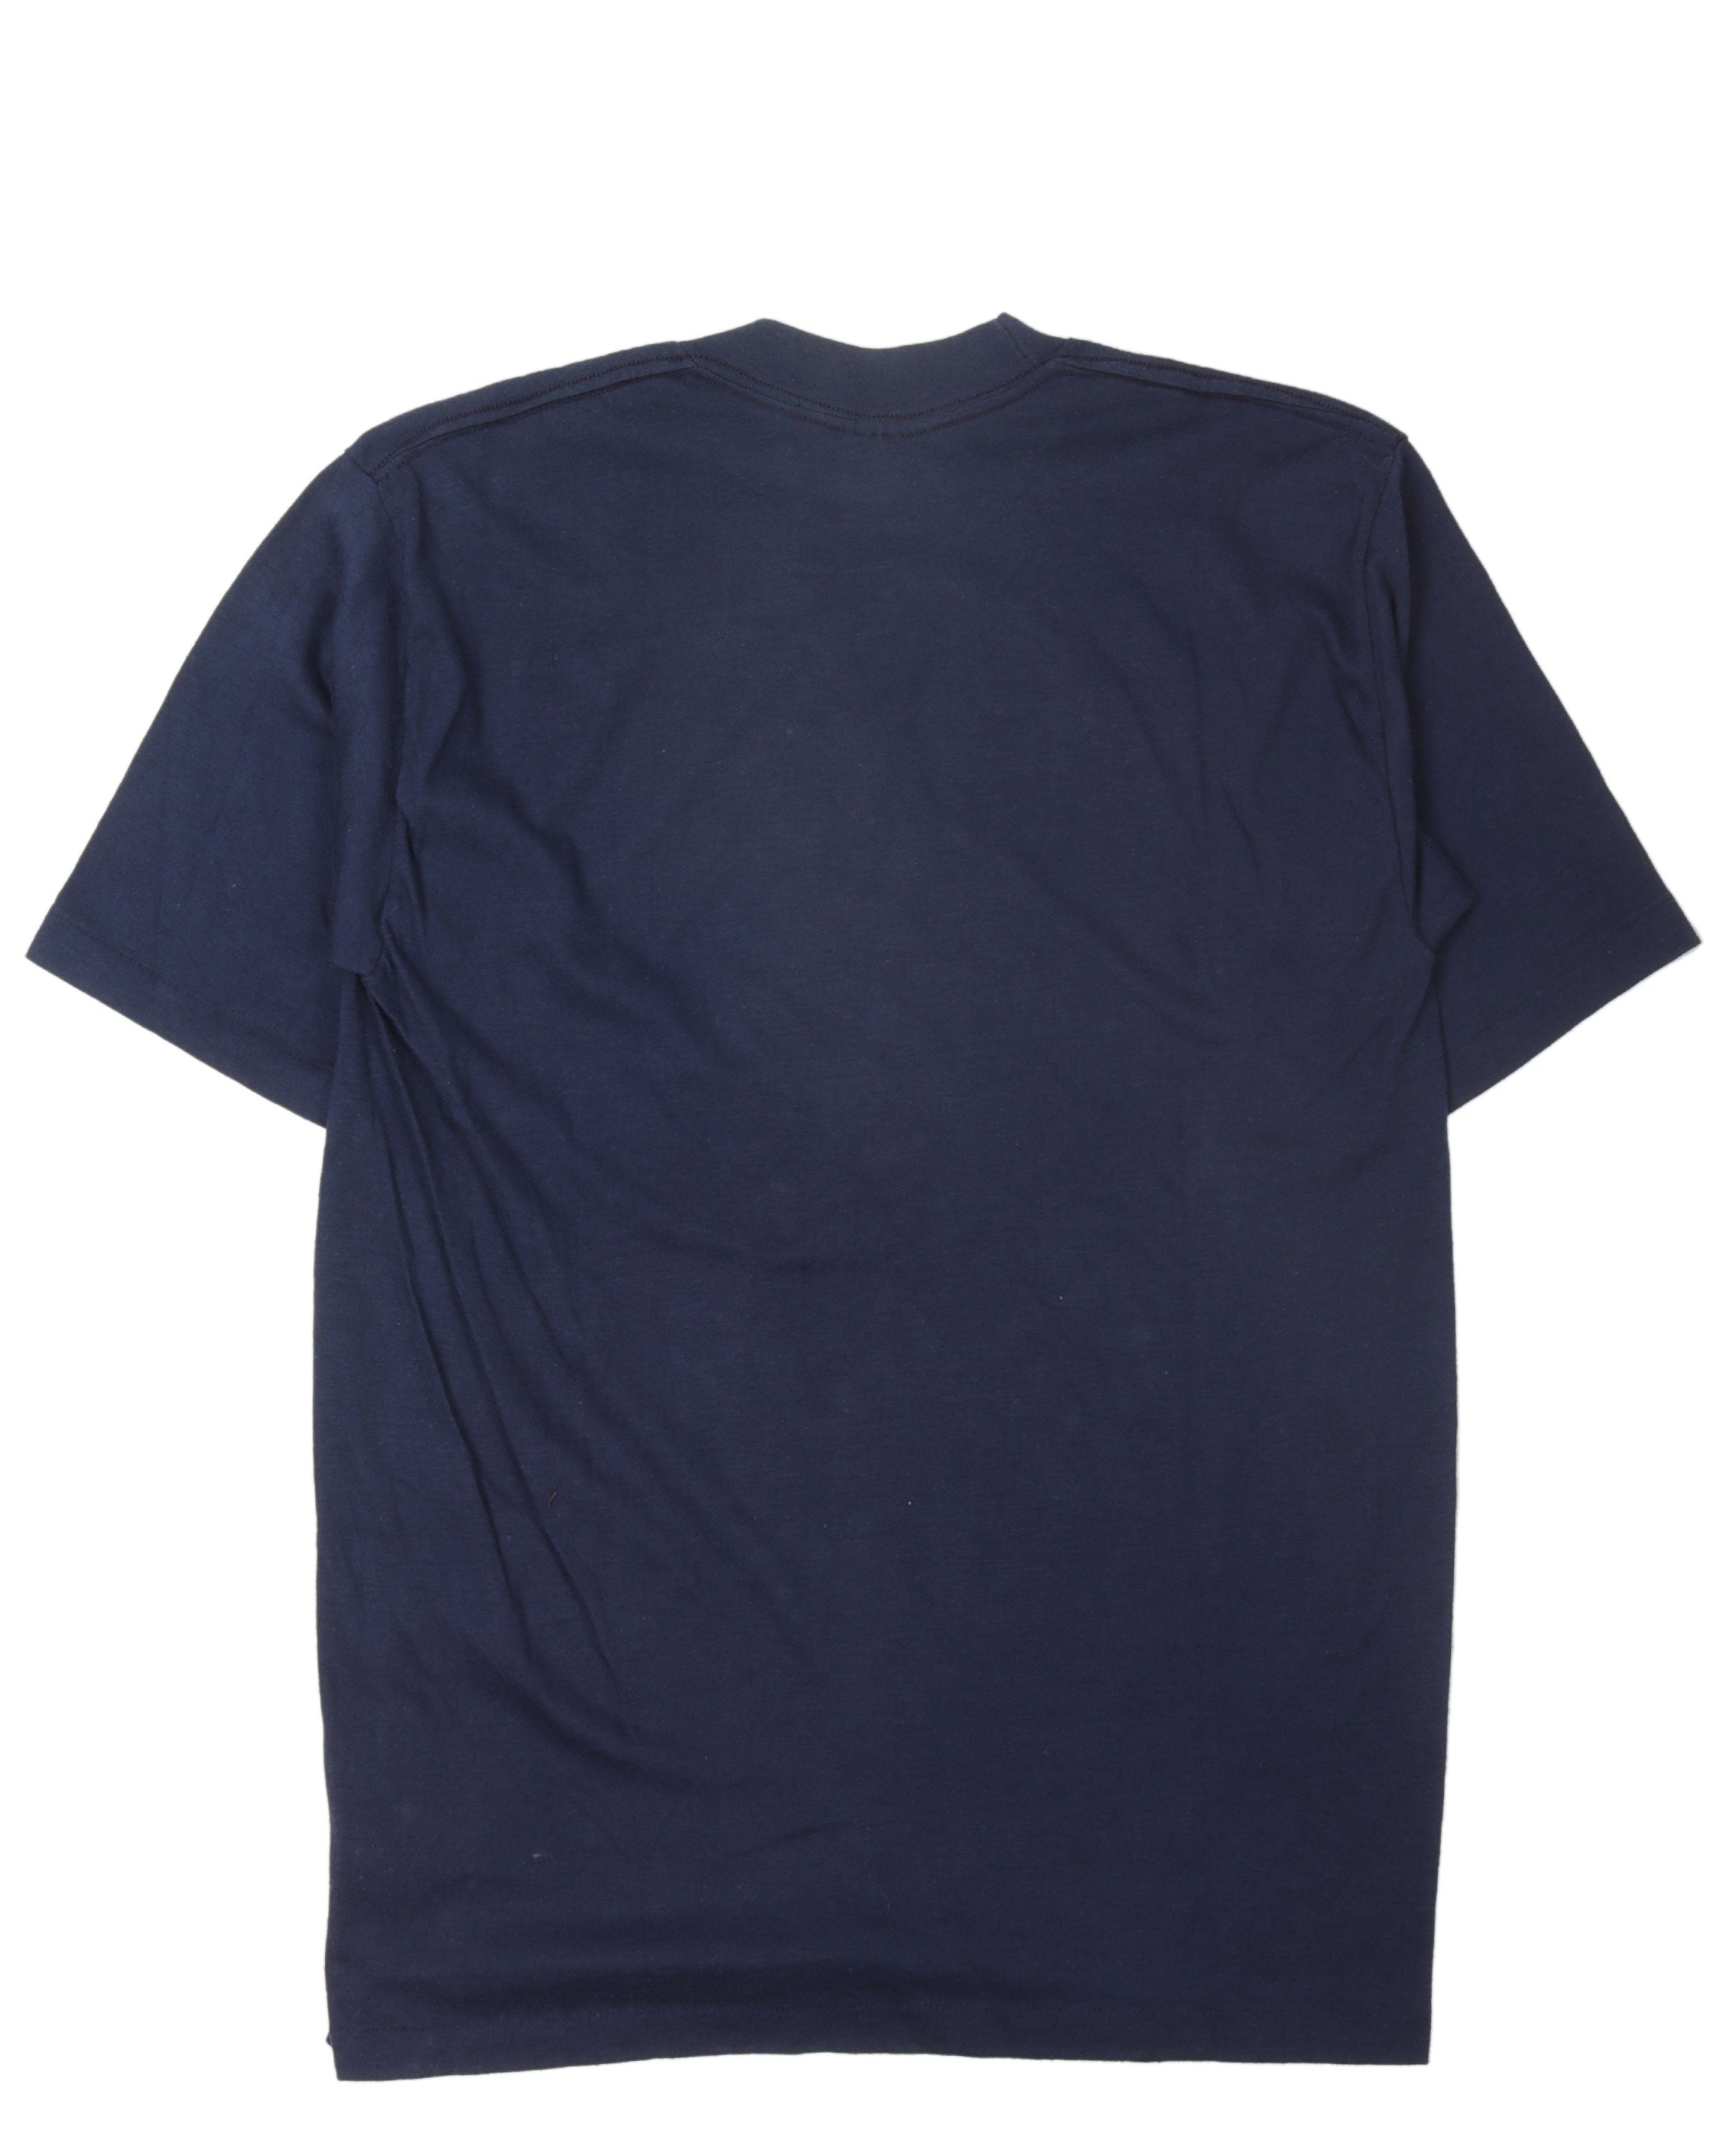 Bill Hopper T-shirt